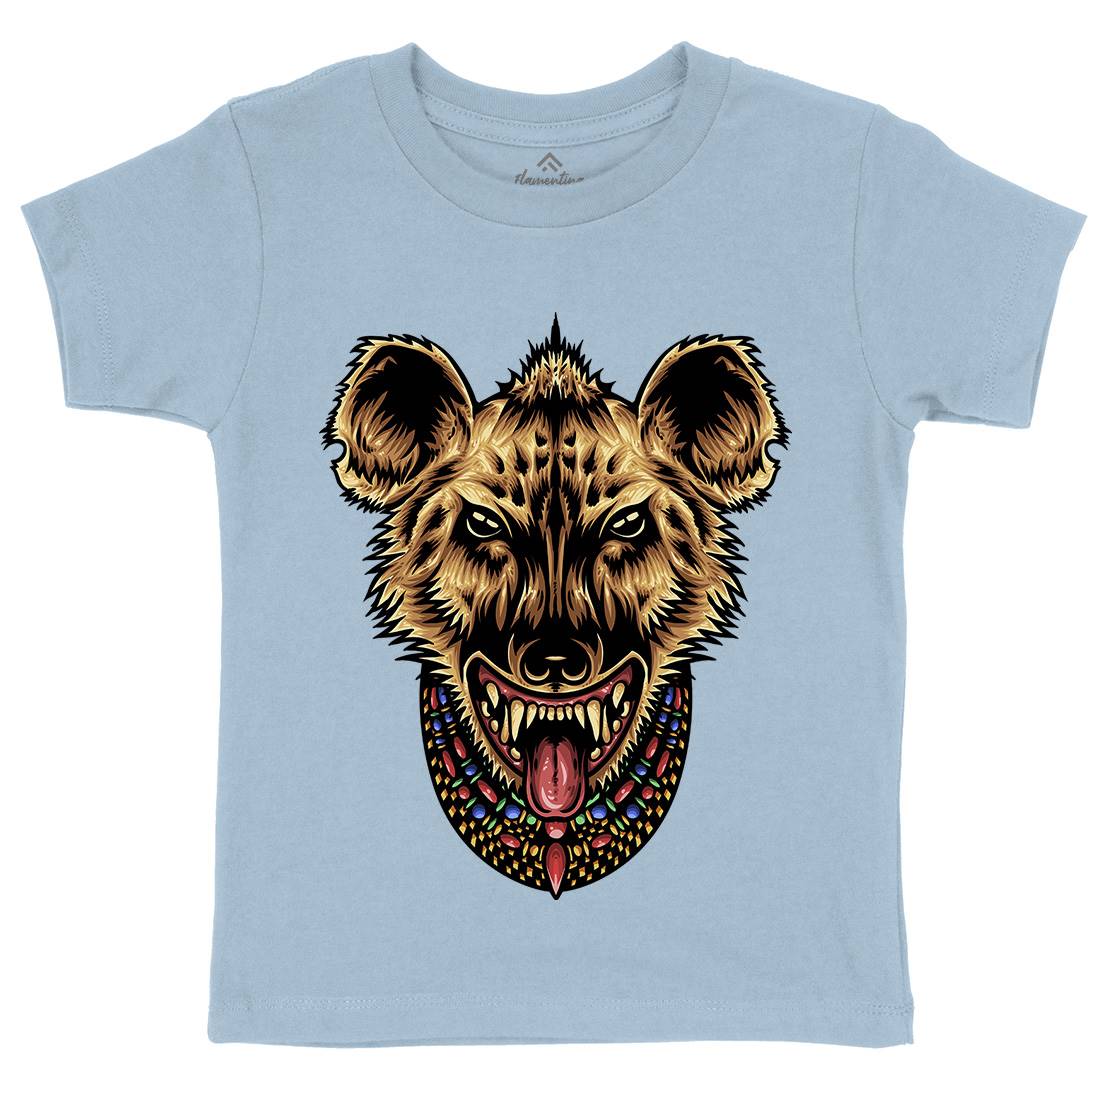 Domination Kids Crew Neck T-Shirt Animals A480